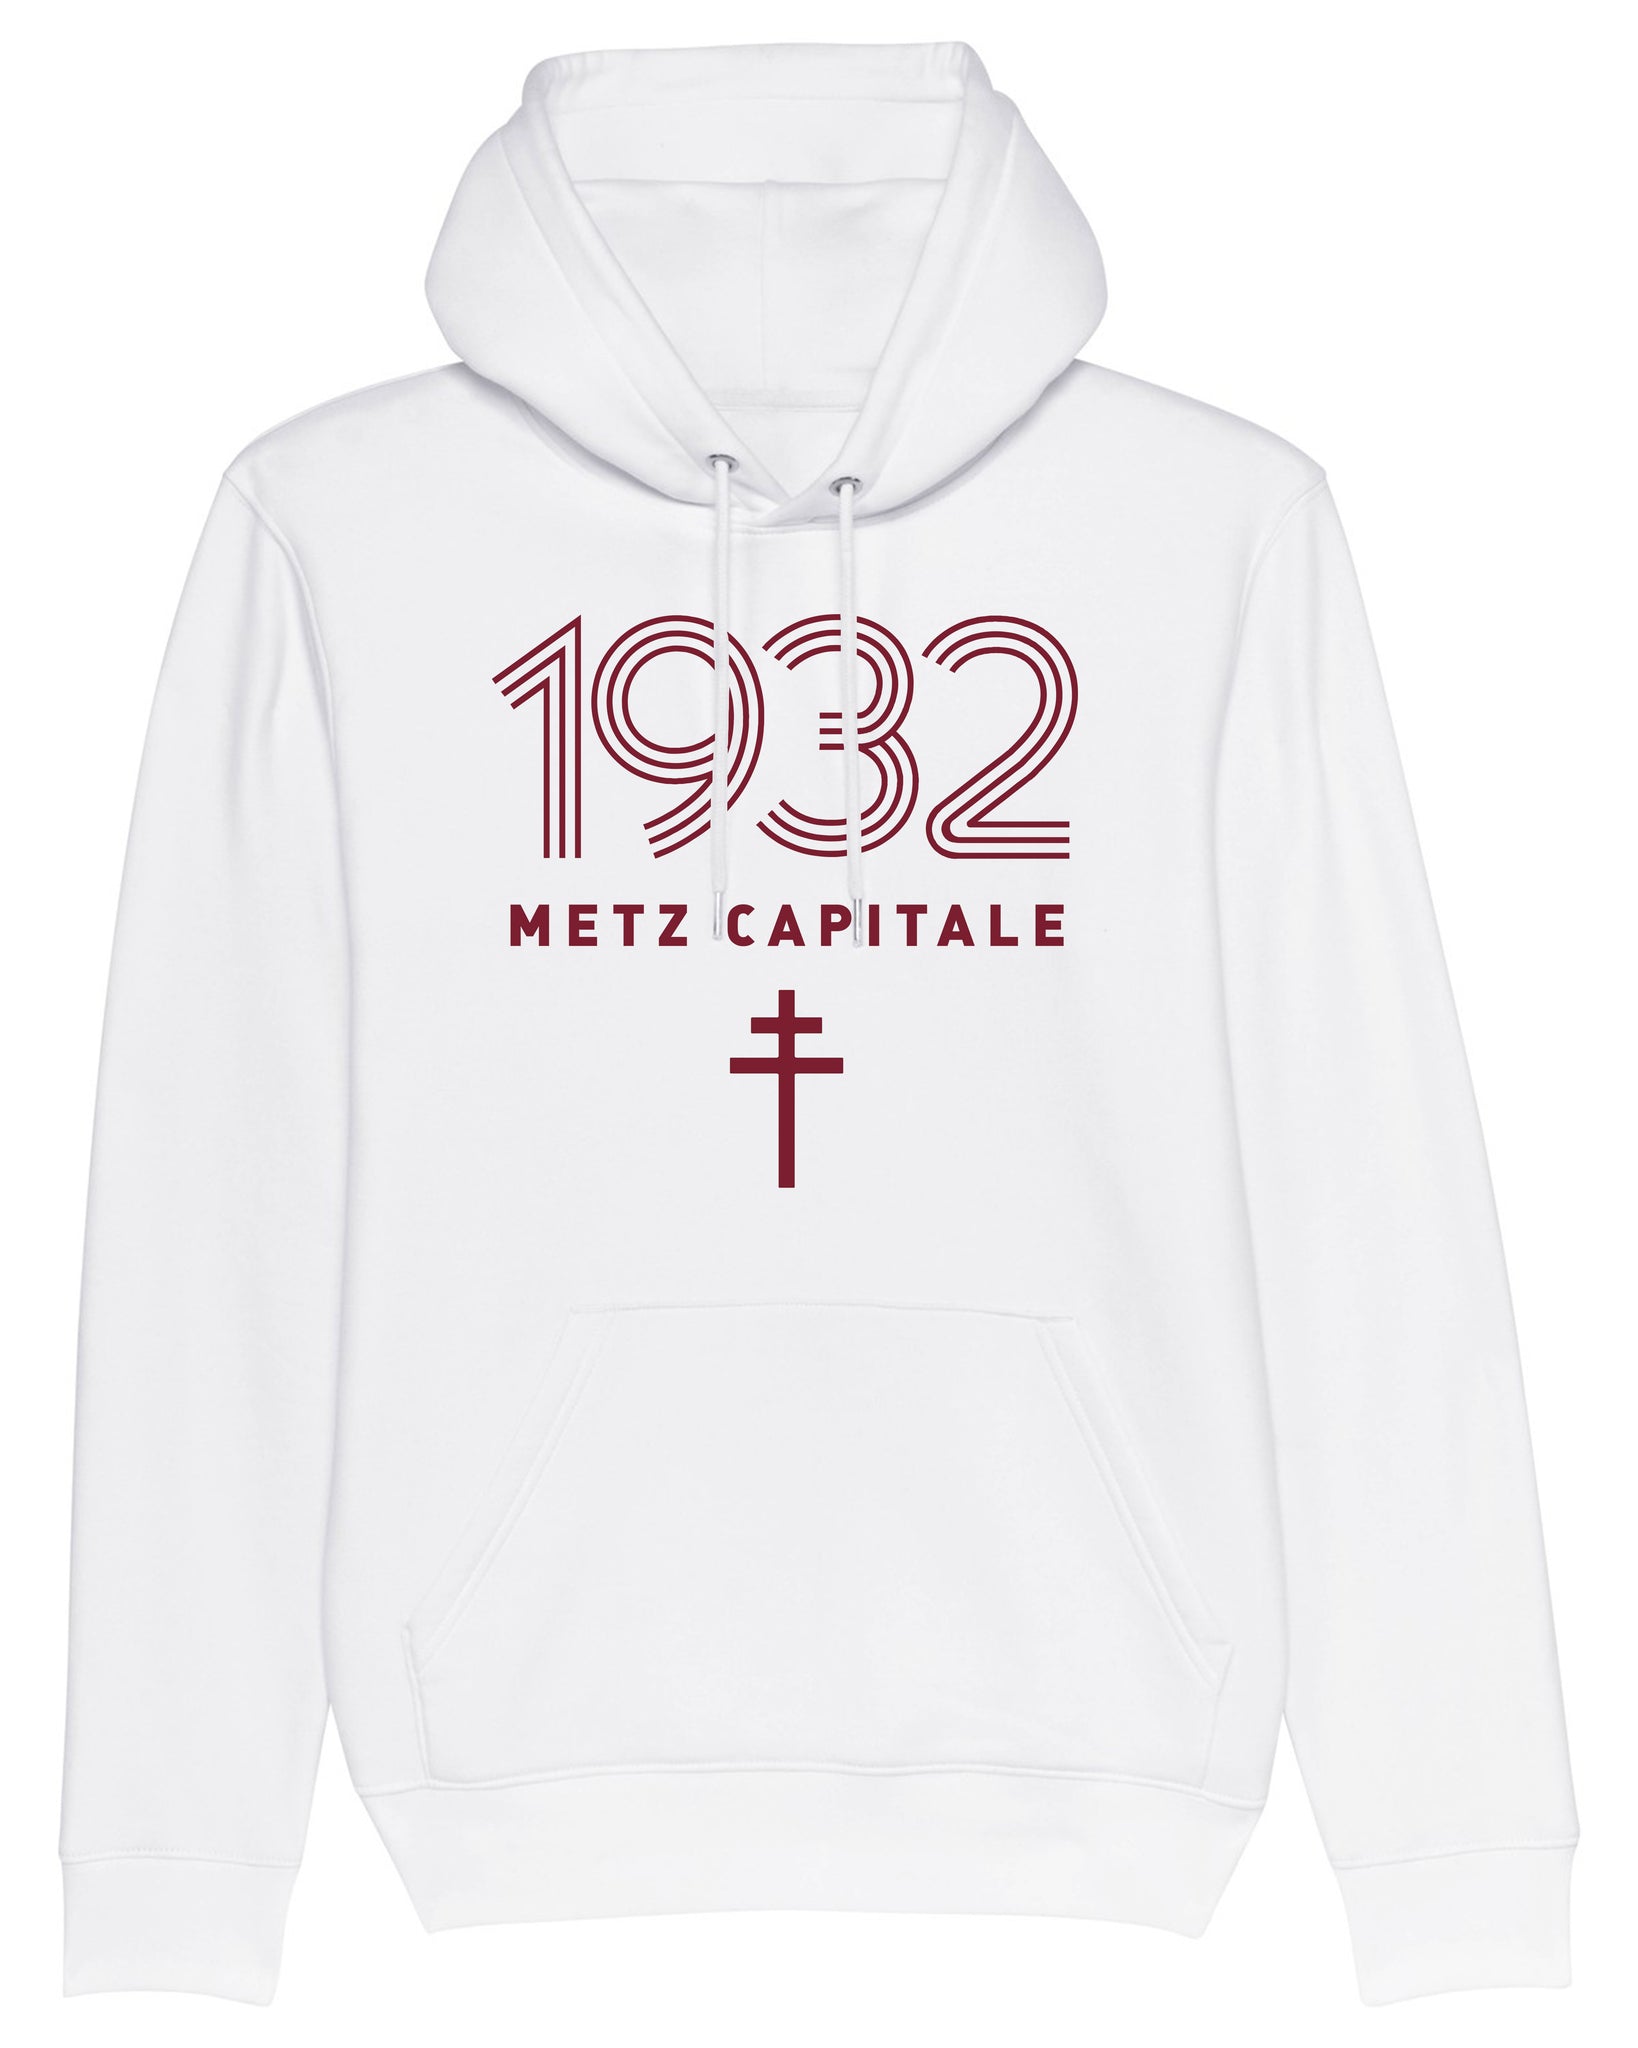 Sweat à capuche "Metz Capitale 1932" - Foot Dimanche 